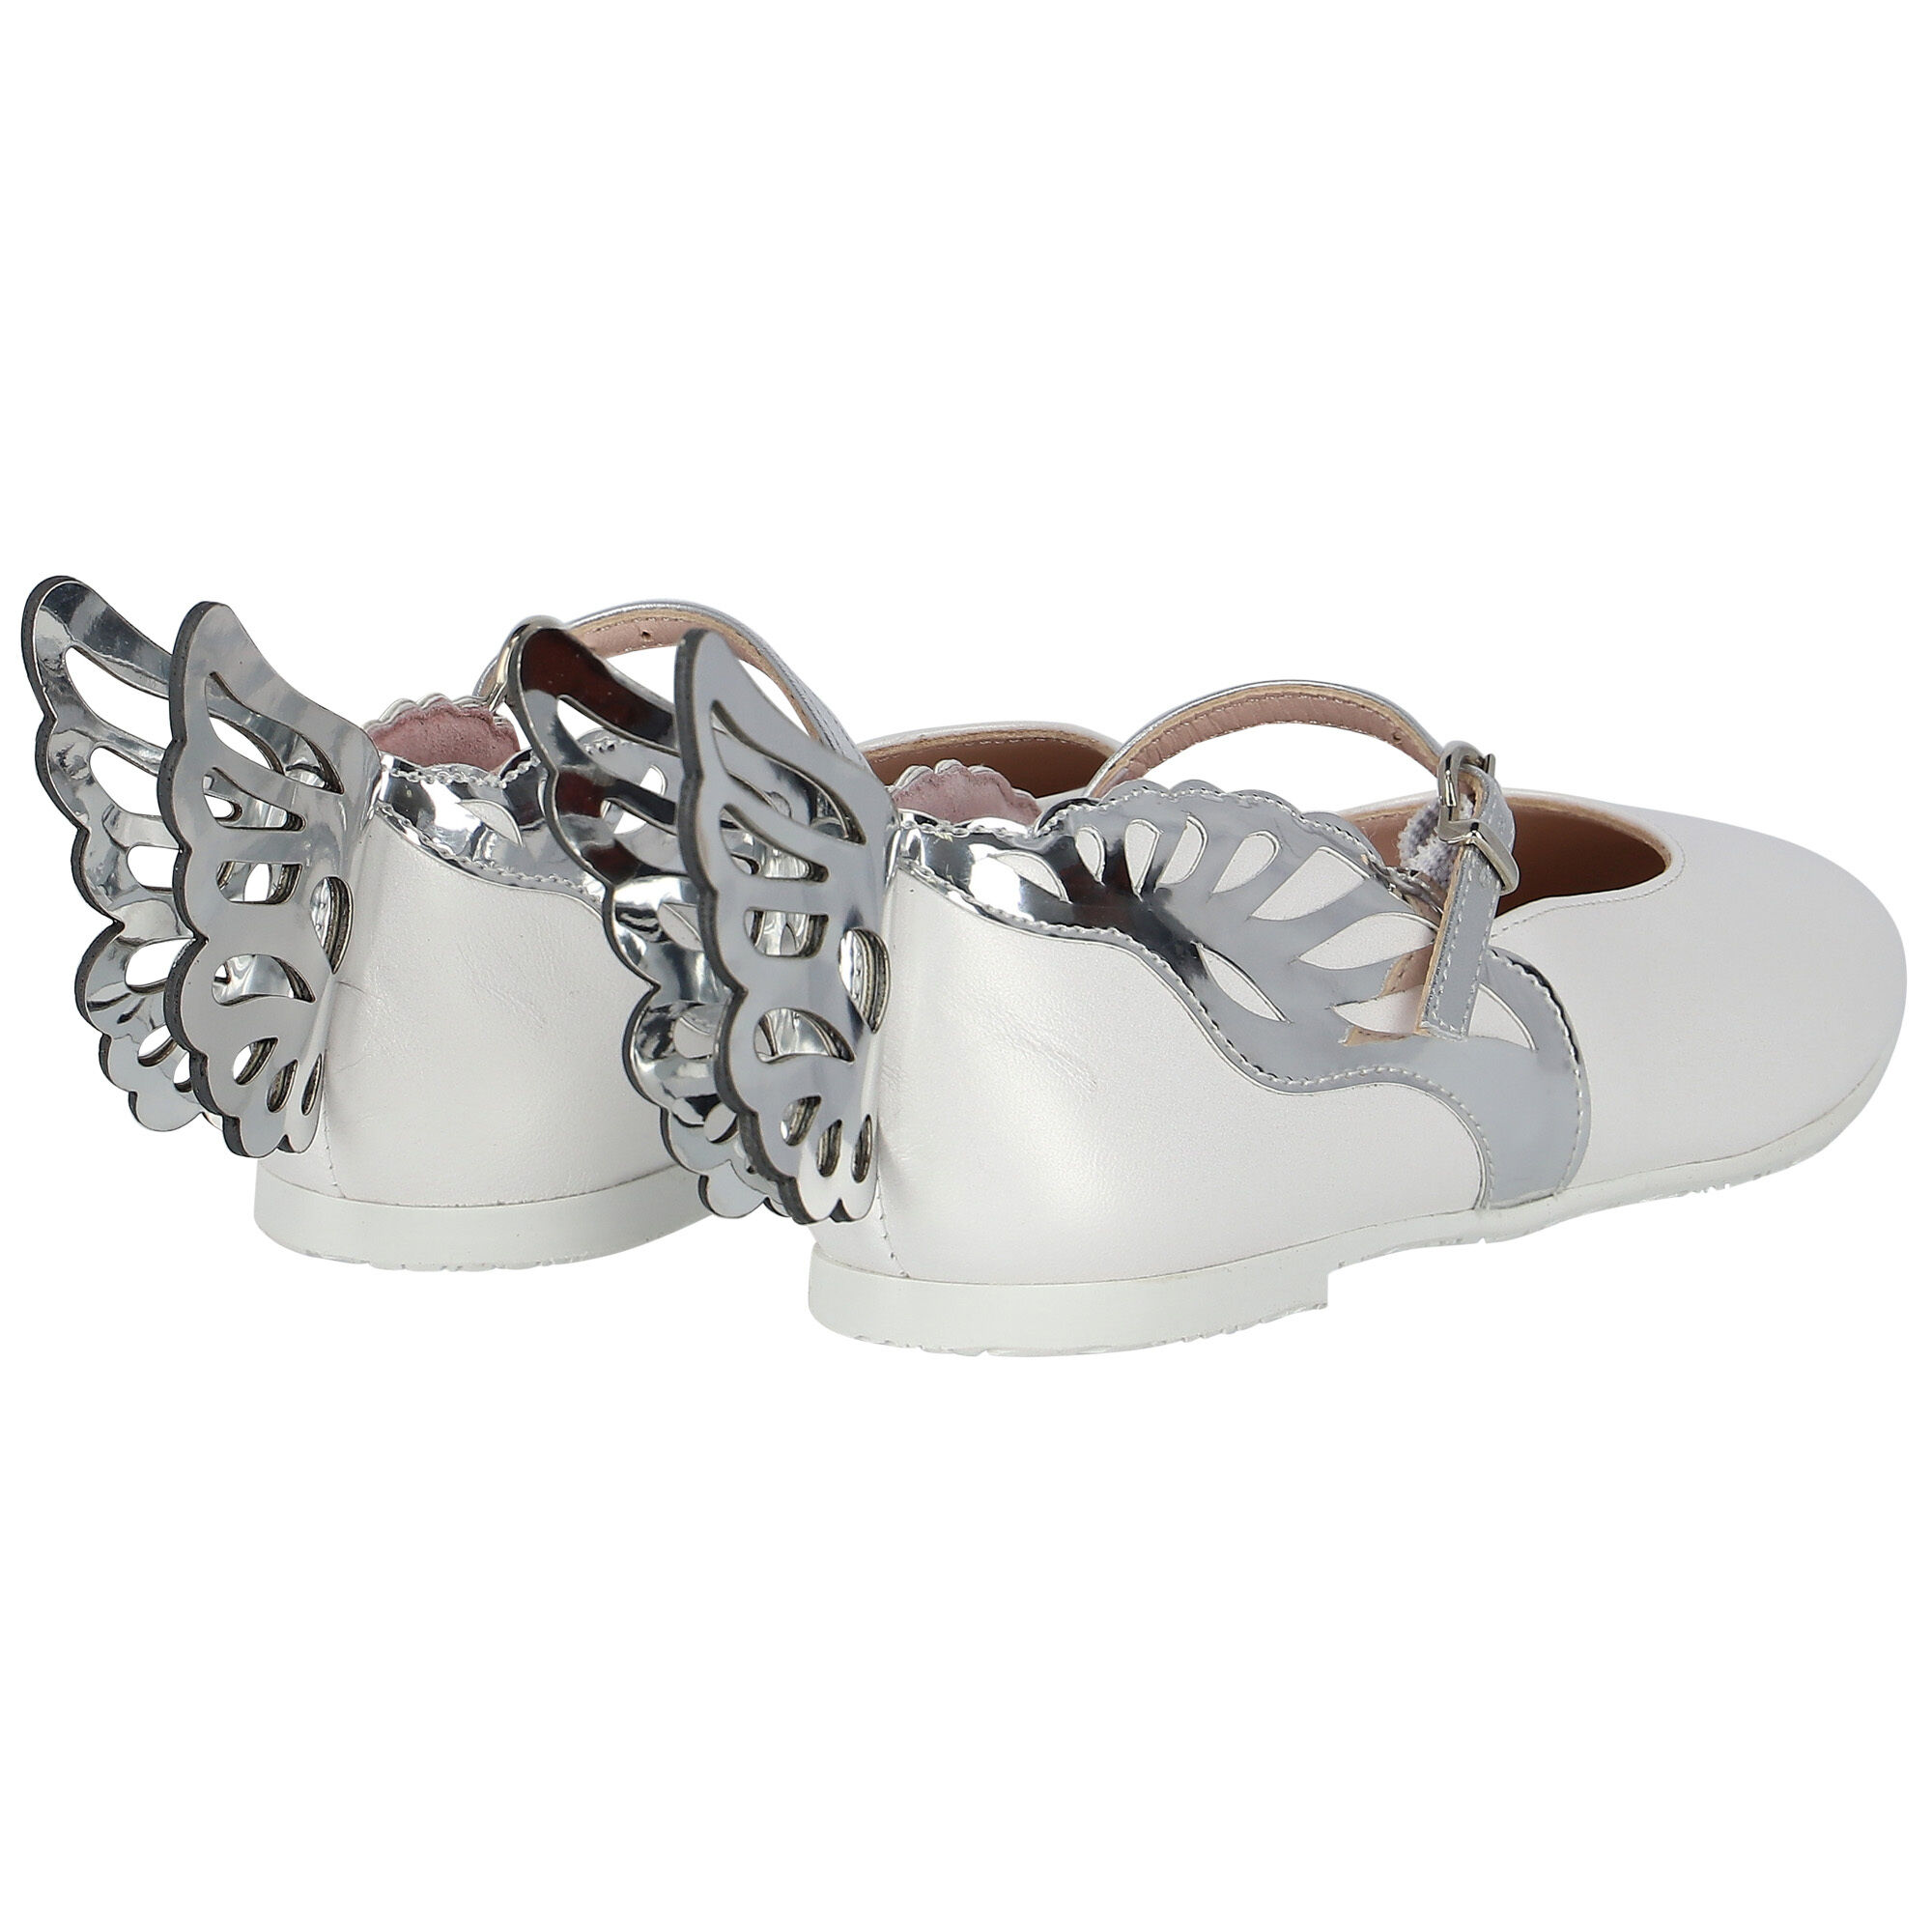 Sophia Webster Mini Butterfly pre-walker leather shoes - Silver